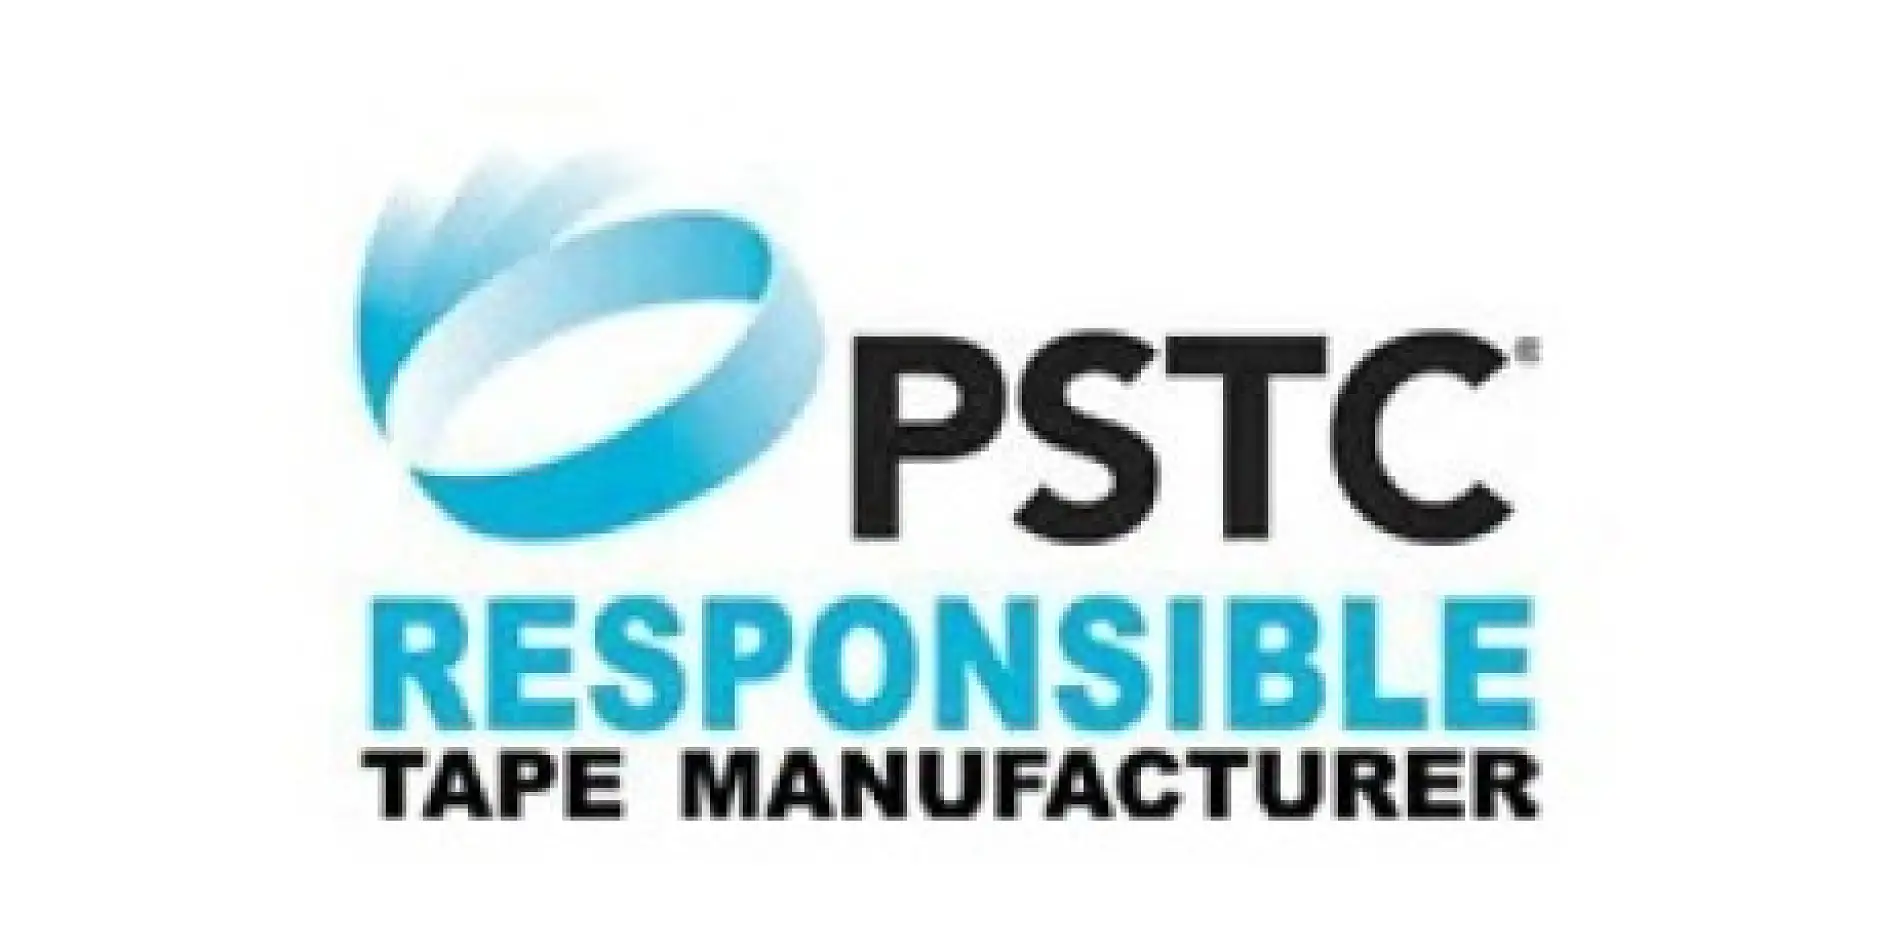 PSTC (The Pressure Sensitive Tape Council) je neziskové obchodní sdružení s 60letou historií a sídlem ve Spojených státech. Sdružuje výrobce a dodavatele lepicích pásek, kterým pomáhá uspět na světovém trhu s kvalitními lepicími páskami citlivými na tlak.